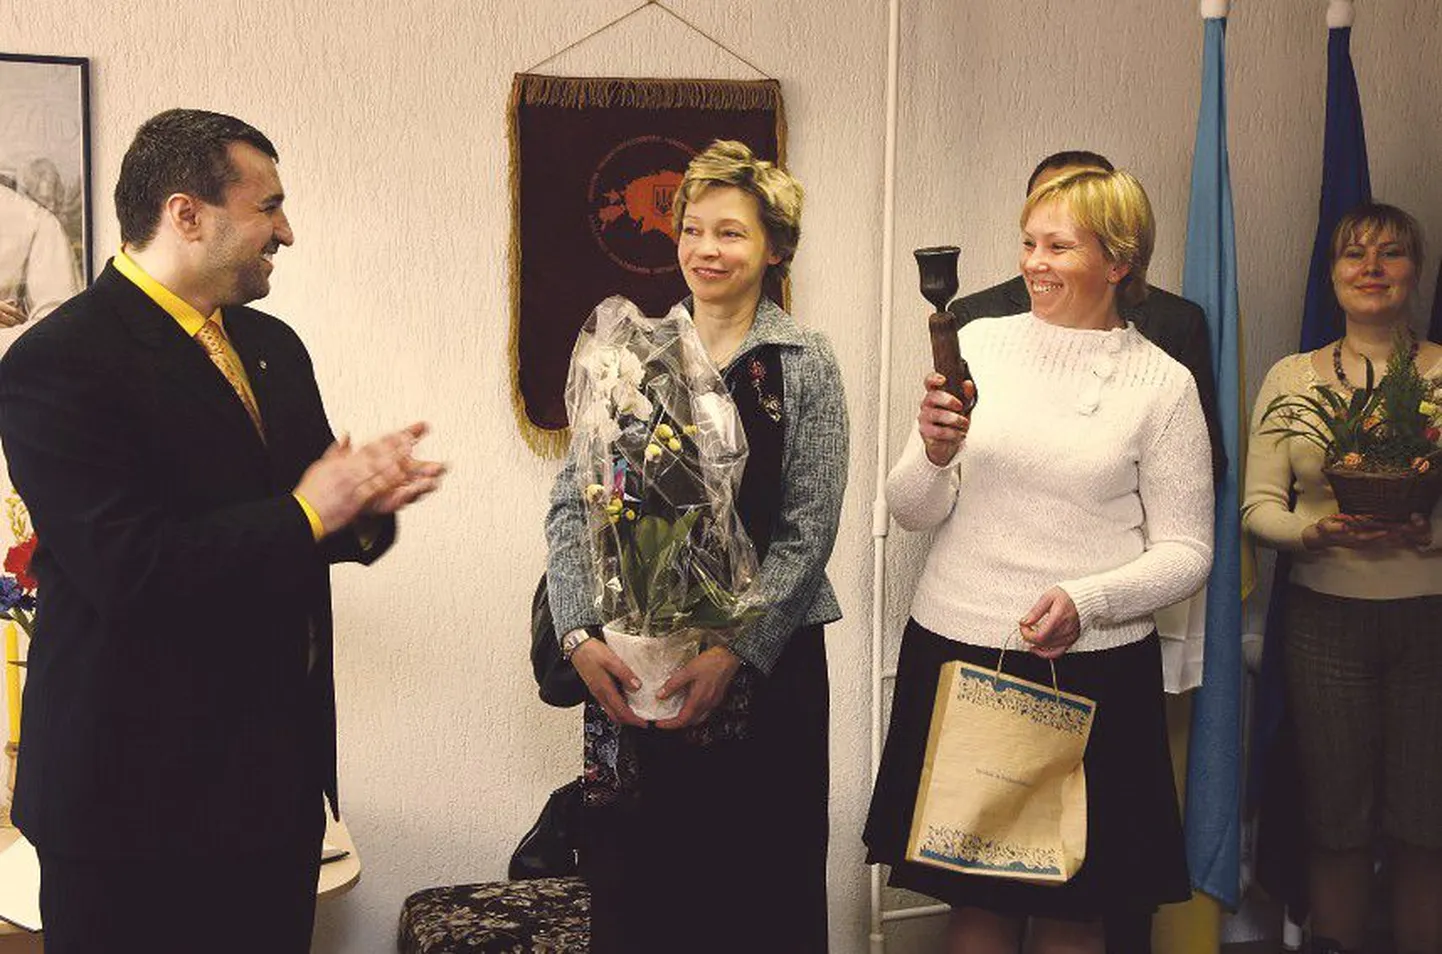 Заведующая отделом образования нацменьшинств Министерства образования Ирене Кяосаар (вторая справа) подарила Владимиру Паламару (слева) колокольчик для воскресной школы.